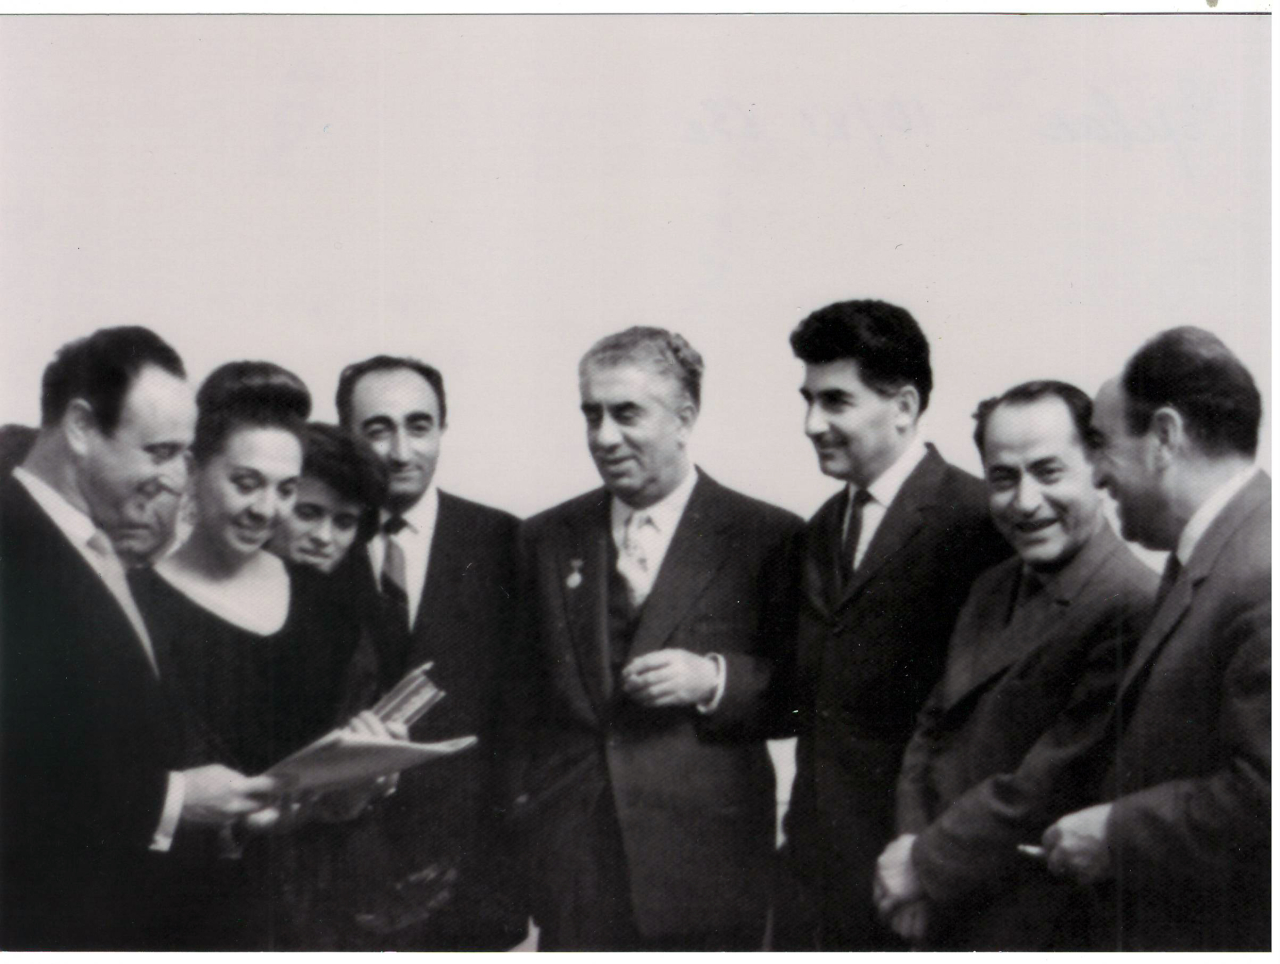 Լուսանկար. Ա. Խաչատրյանը կնոջ՝ Ն. Մակարովայի, Յ. Զարոբյանի, Հ. Խանջյանի և այլոց հետ 